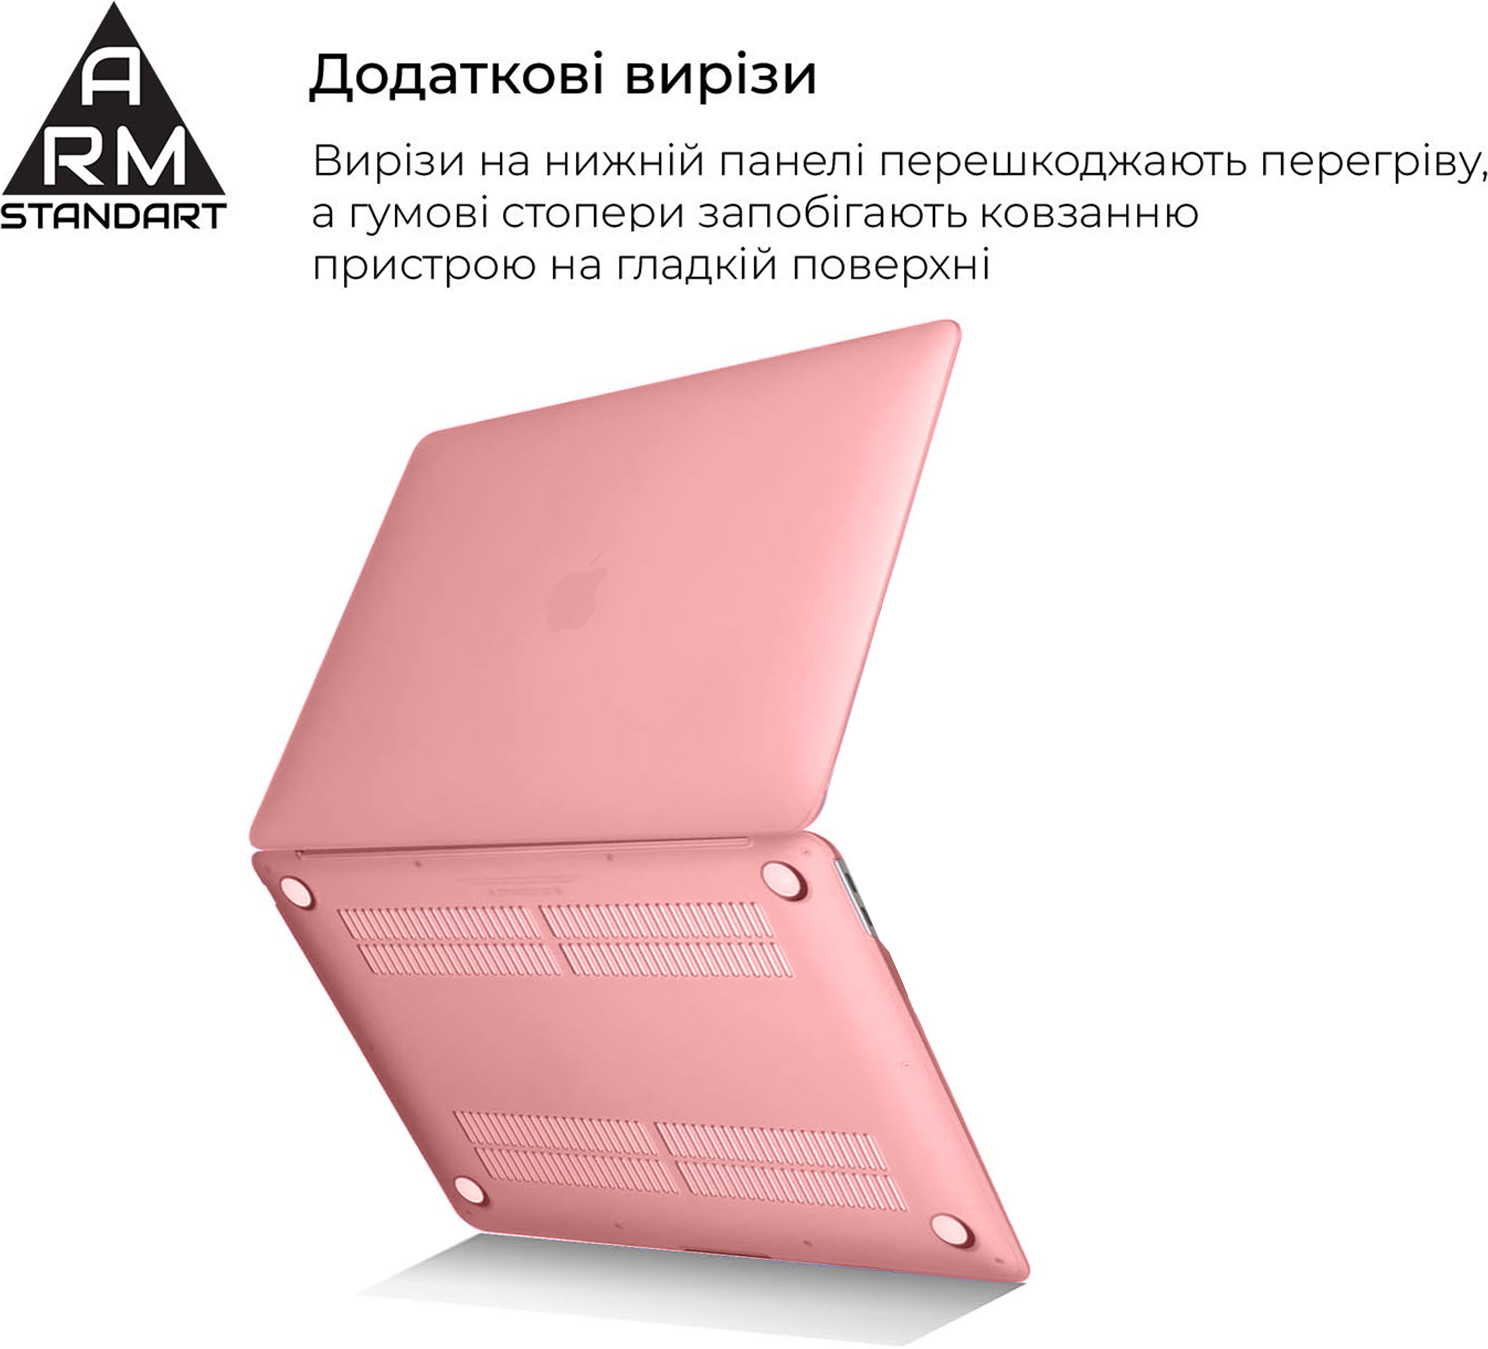 ArmorStandart Matte Shell для MacBook Pro 13.3 (A1706/A1708/A1989/A2159/A2289/A2251/A2338) Pink (ARM68156)фото4